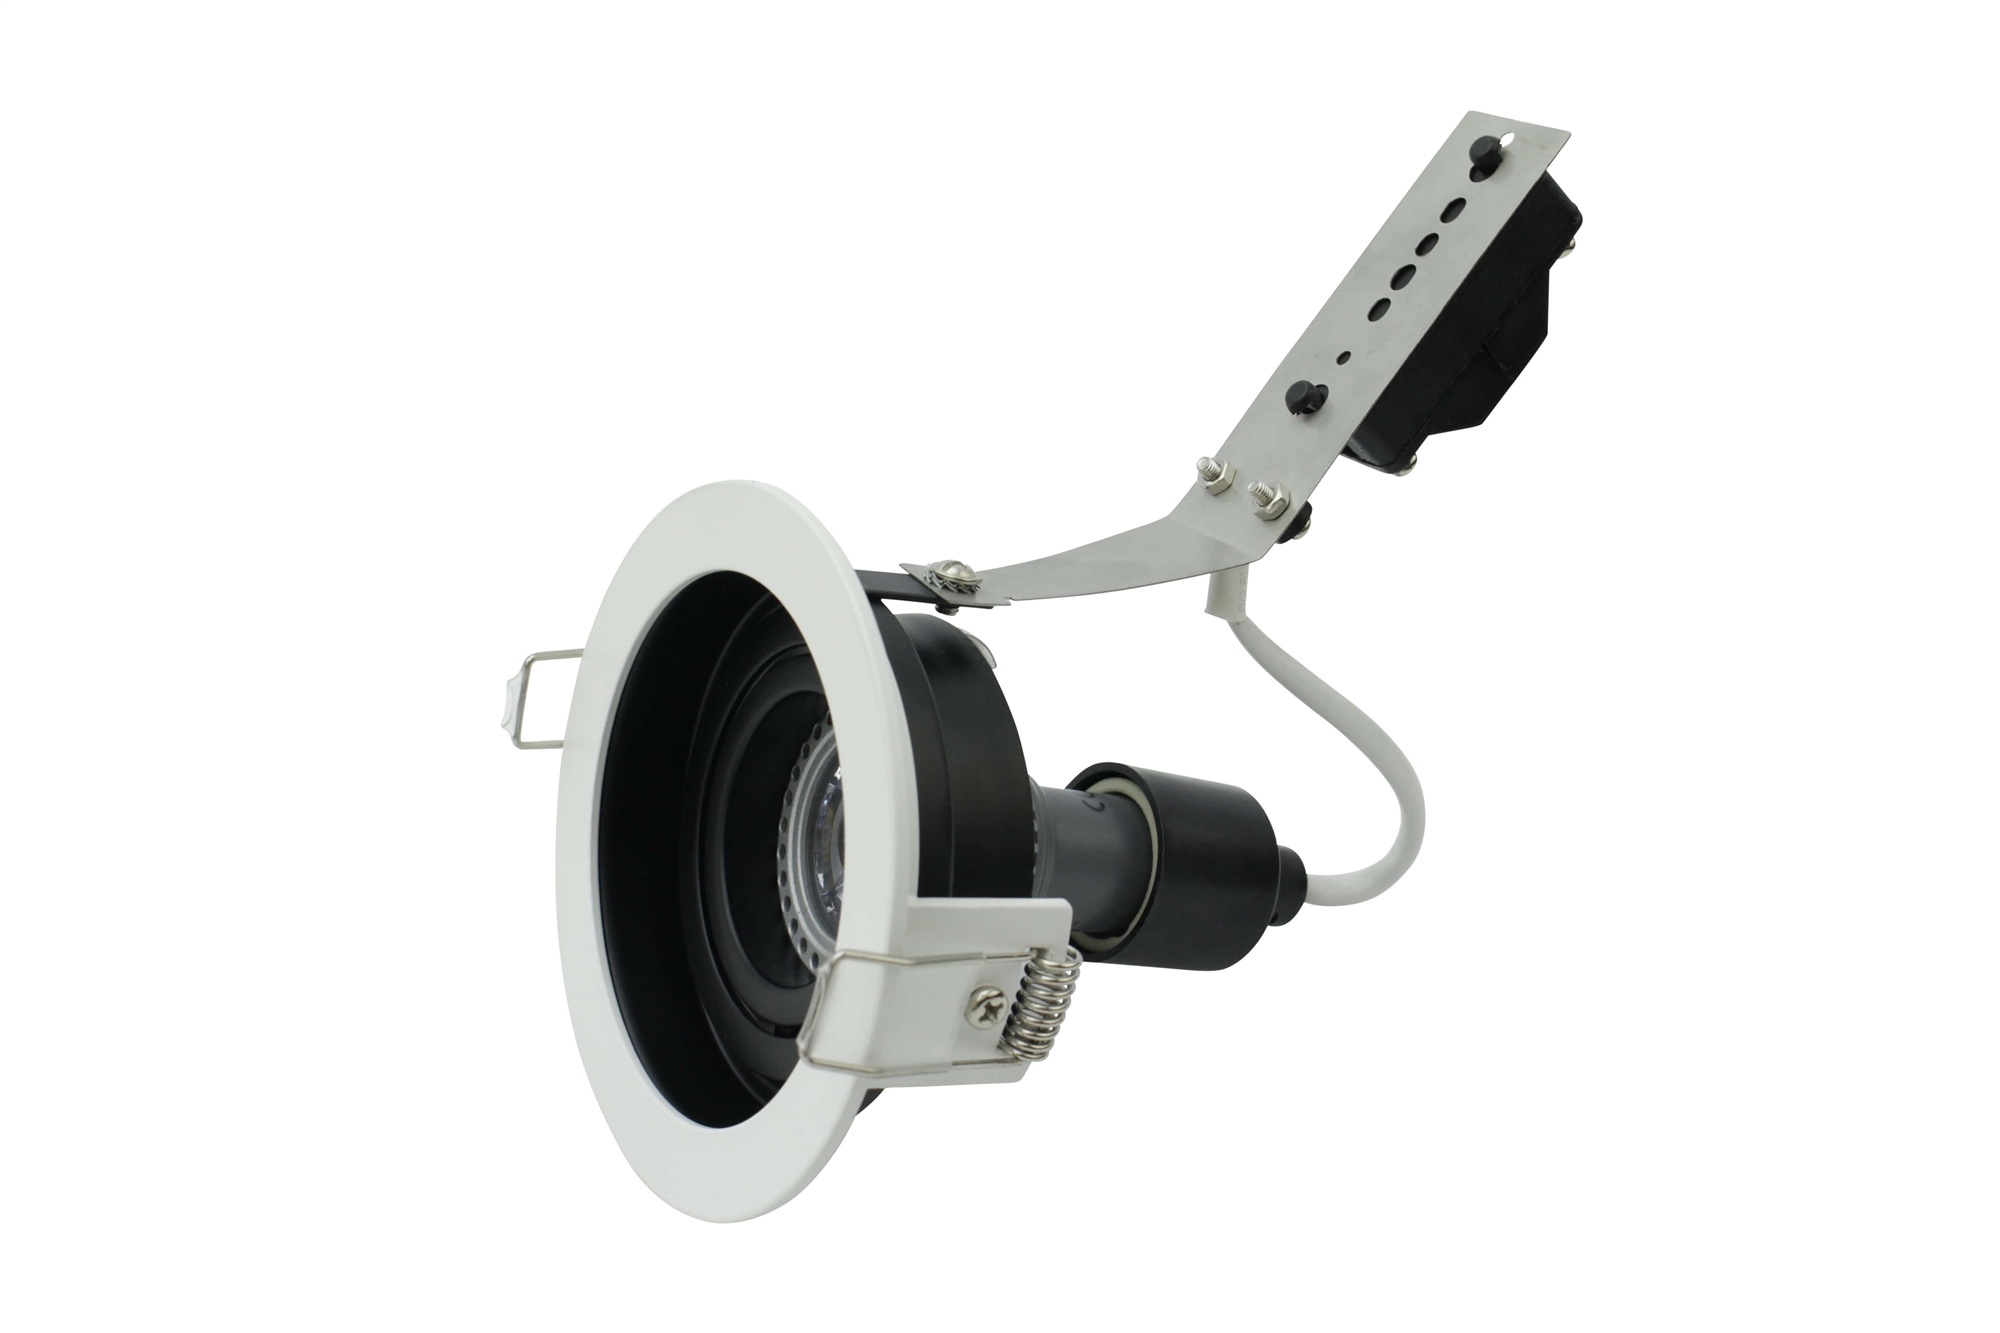 Lampenlux Einbaustrahler Sandi dreh- und schwenkbar Einbauspot Aluminium Downlight innen schwarz außen weiß inkl. LED-Leuchtmittel